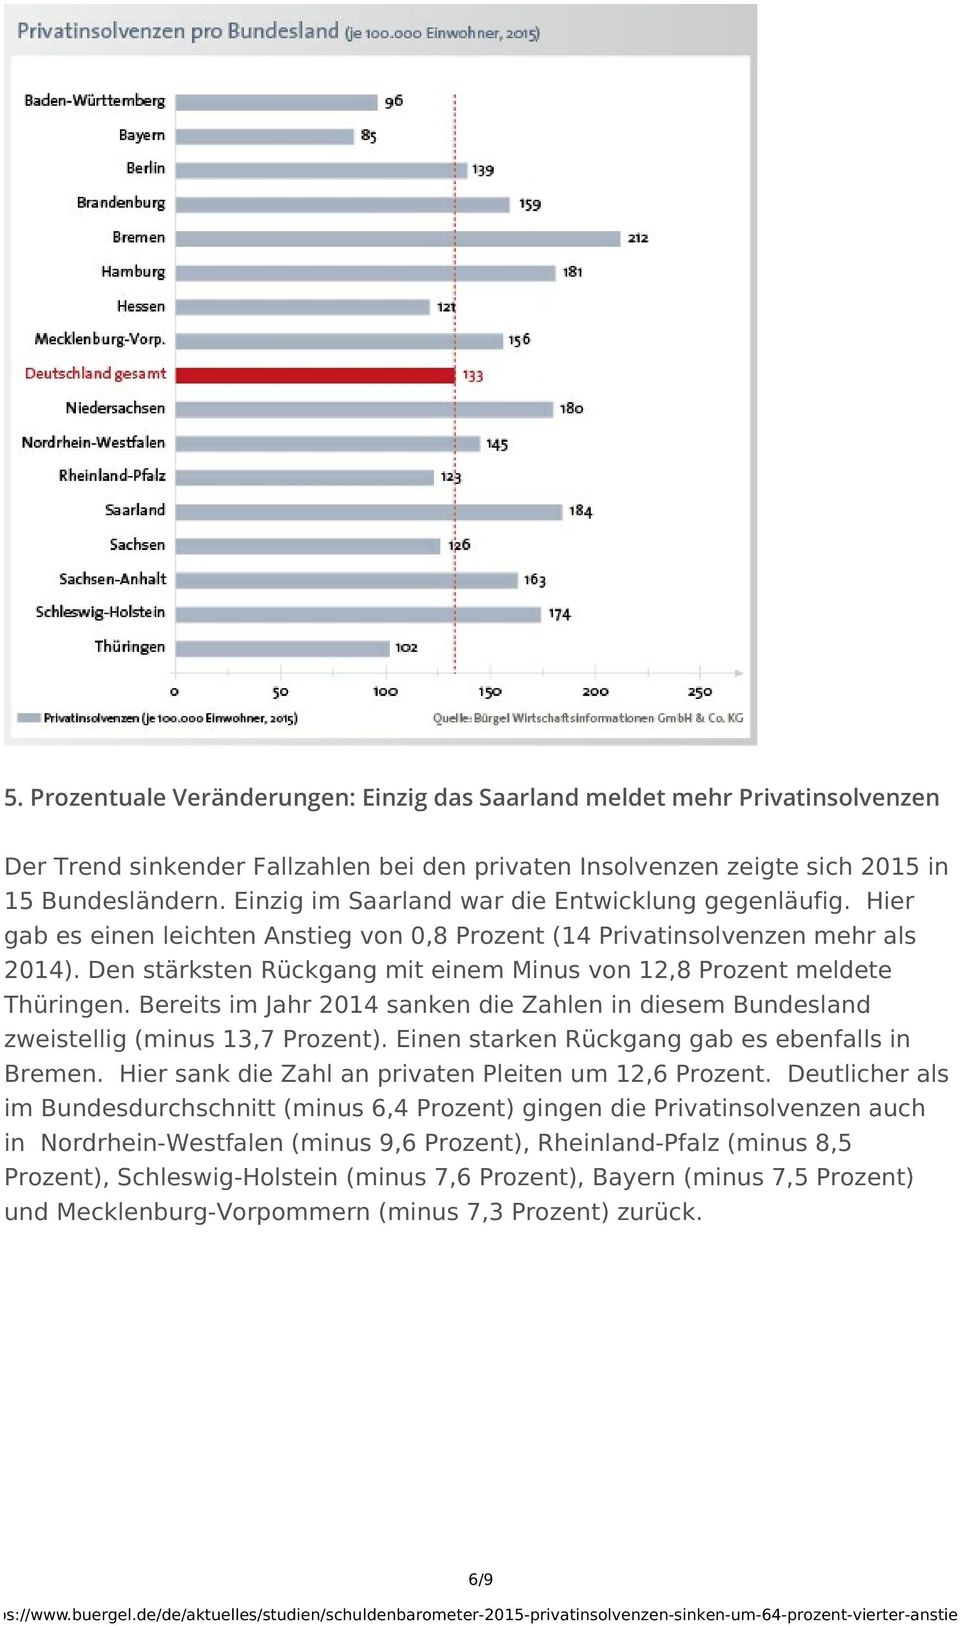 Den stärksten Rückgang mit einem Minus von 12,8 Prozent meldete Thüringen. Bereits im Jahr 2014 sanken die Zahlen in diesem Bundesland zweistellig (minus 13,7 Prozent).